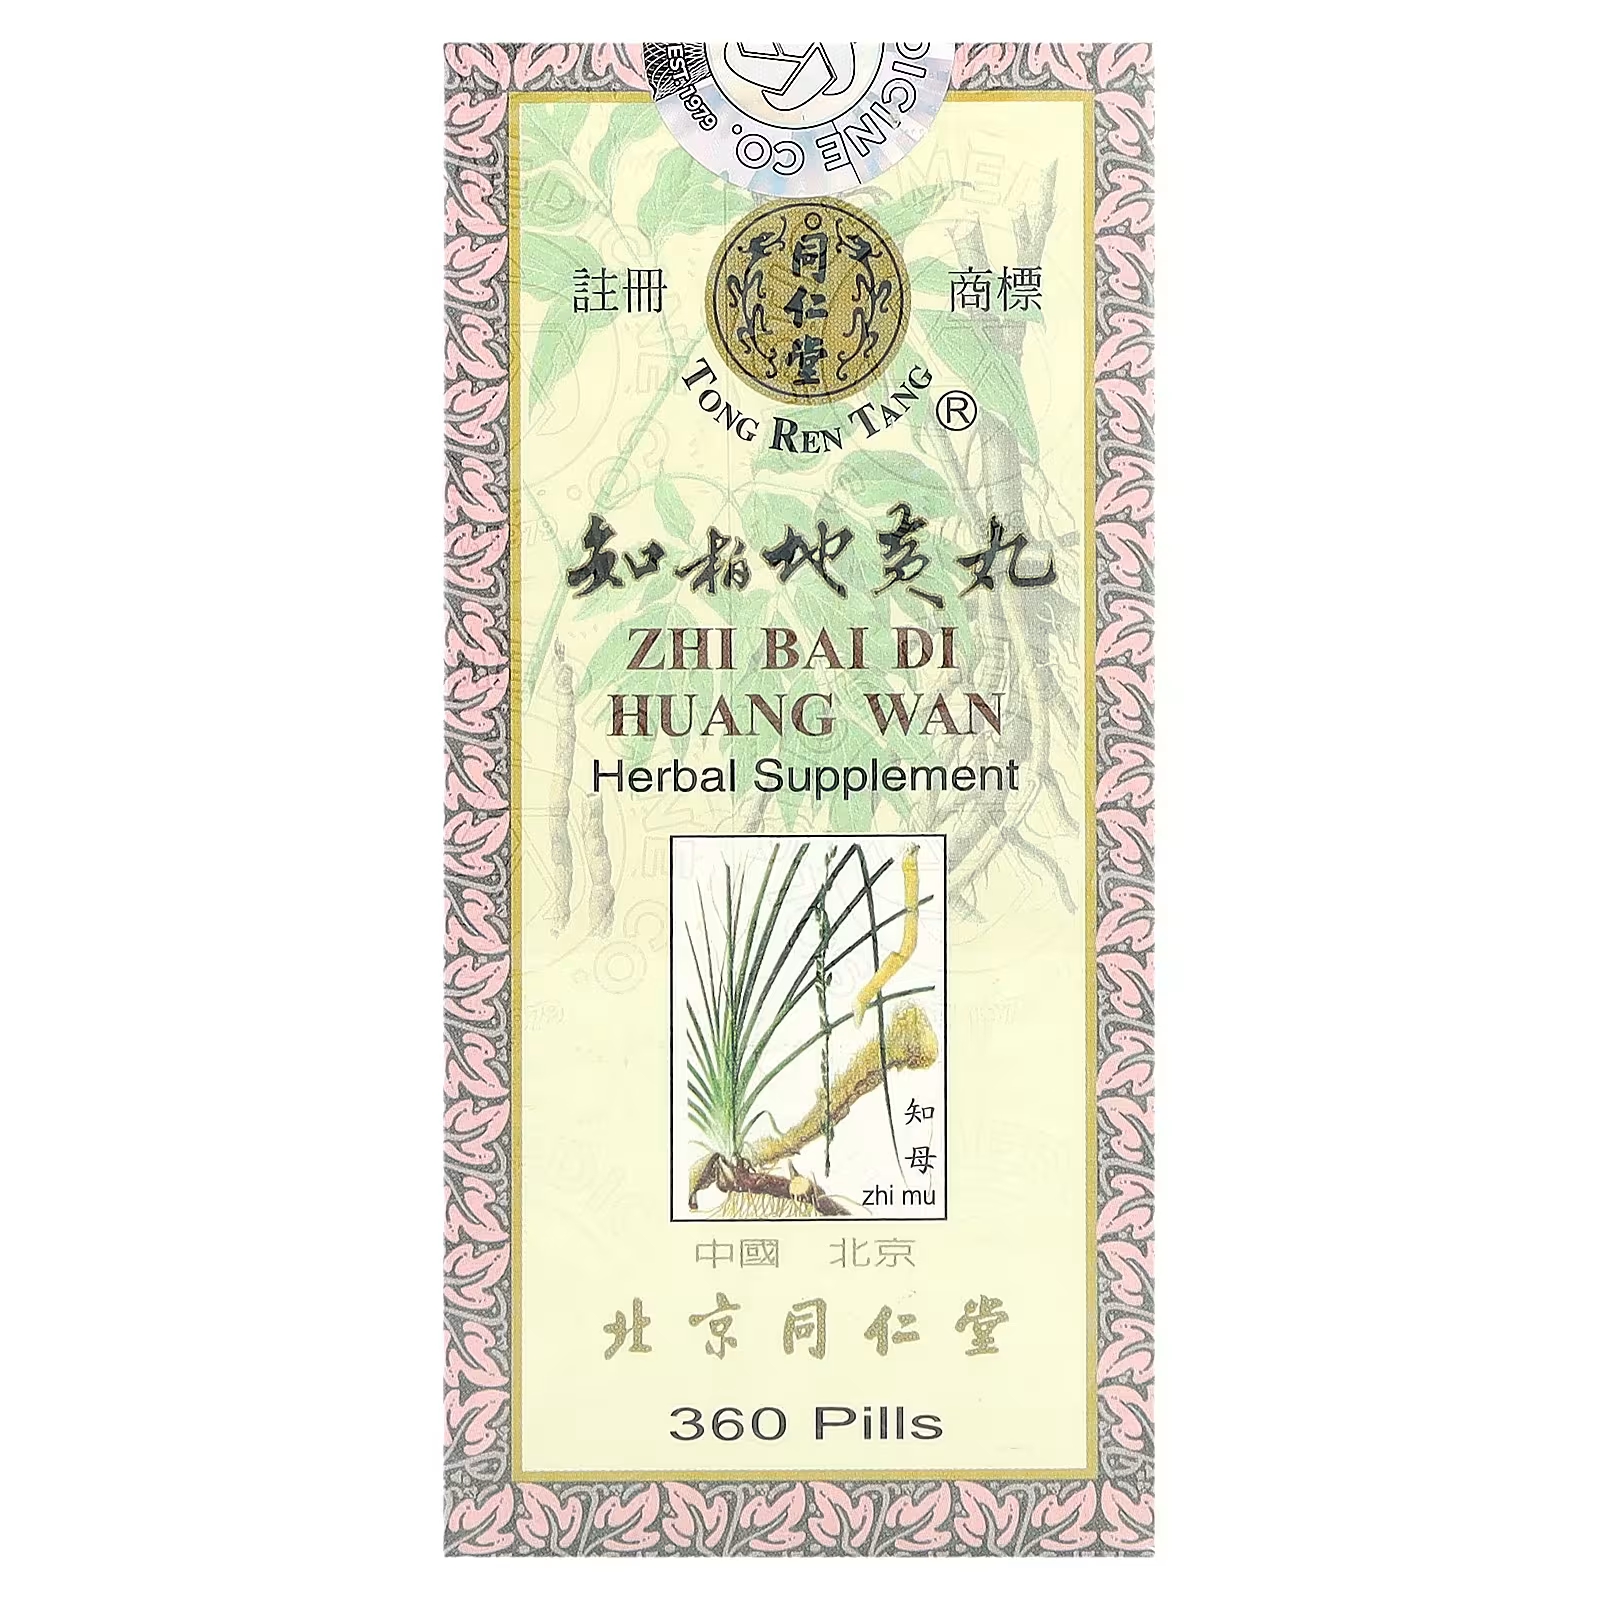 Растительная добавка Tong Ren Tang, 360 таблеток tong ren tang shun chi wan поддерживает здоровье носа горла гортани трахеи и легких 300 таблеток